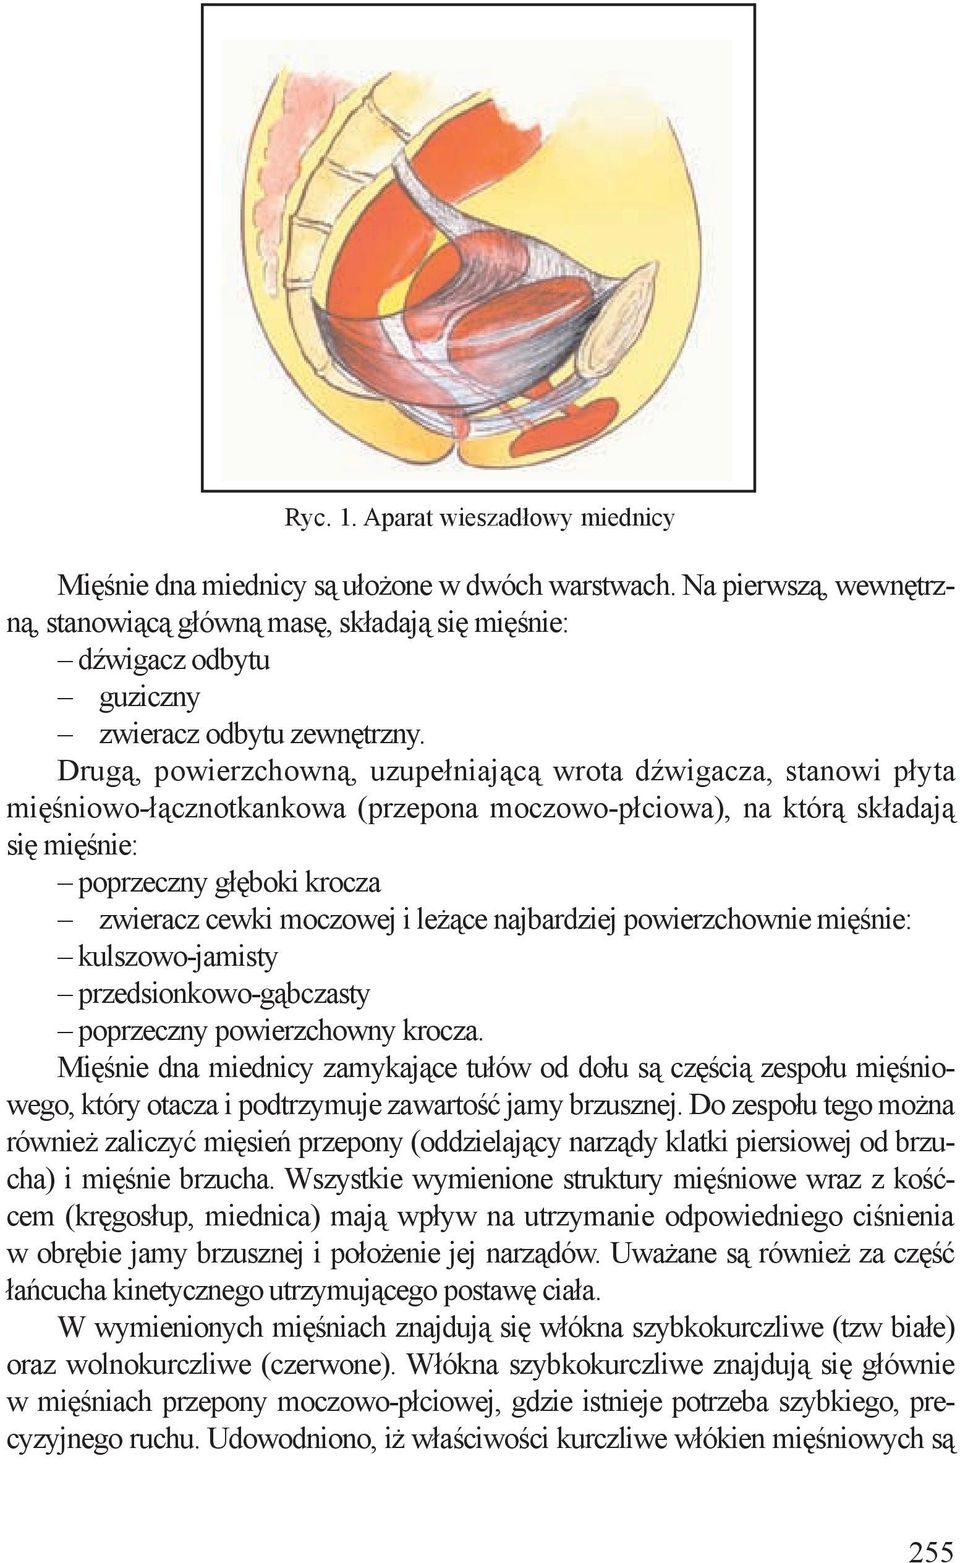 Drugą, powierzchowną, uzupełniającą wrota dźwigacza, stanowi płyta mięśniowo-łącznotkankowa (przepona moczowo-płciowa), na którą składają się mięśnie: poprzeczny głęboki krocza zwieracz cewki